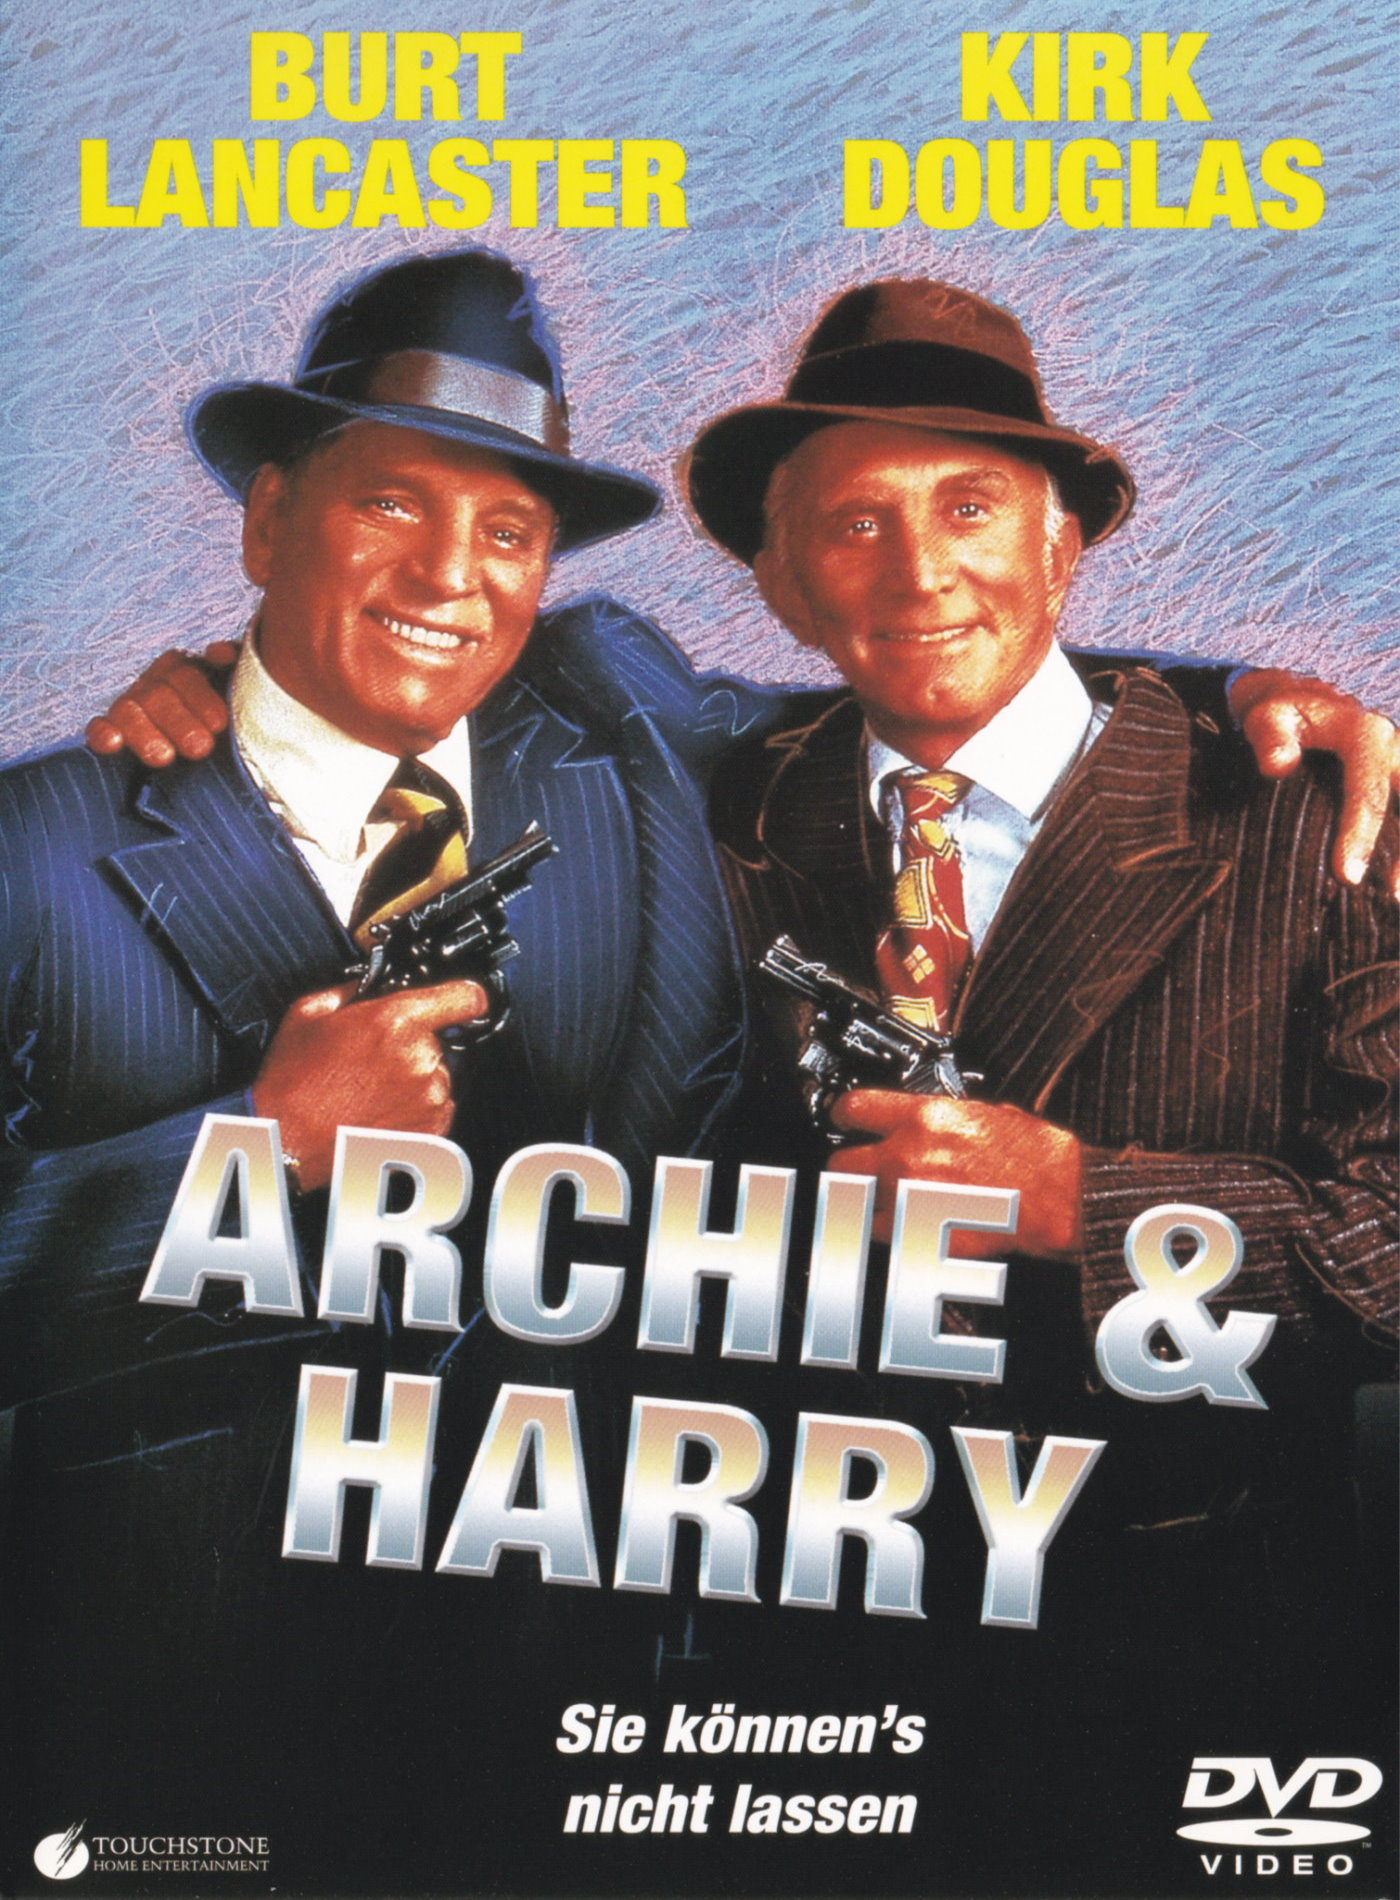 Cover - Archie & Harry - Sie können's nicht lassen.jpg